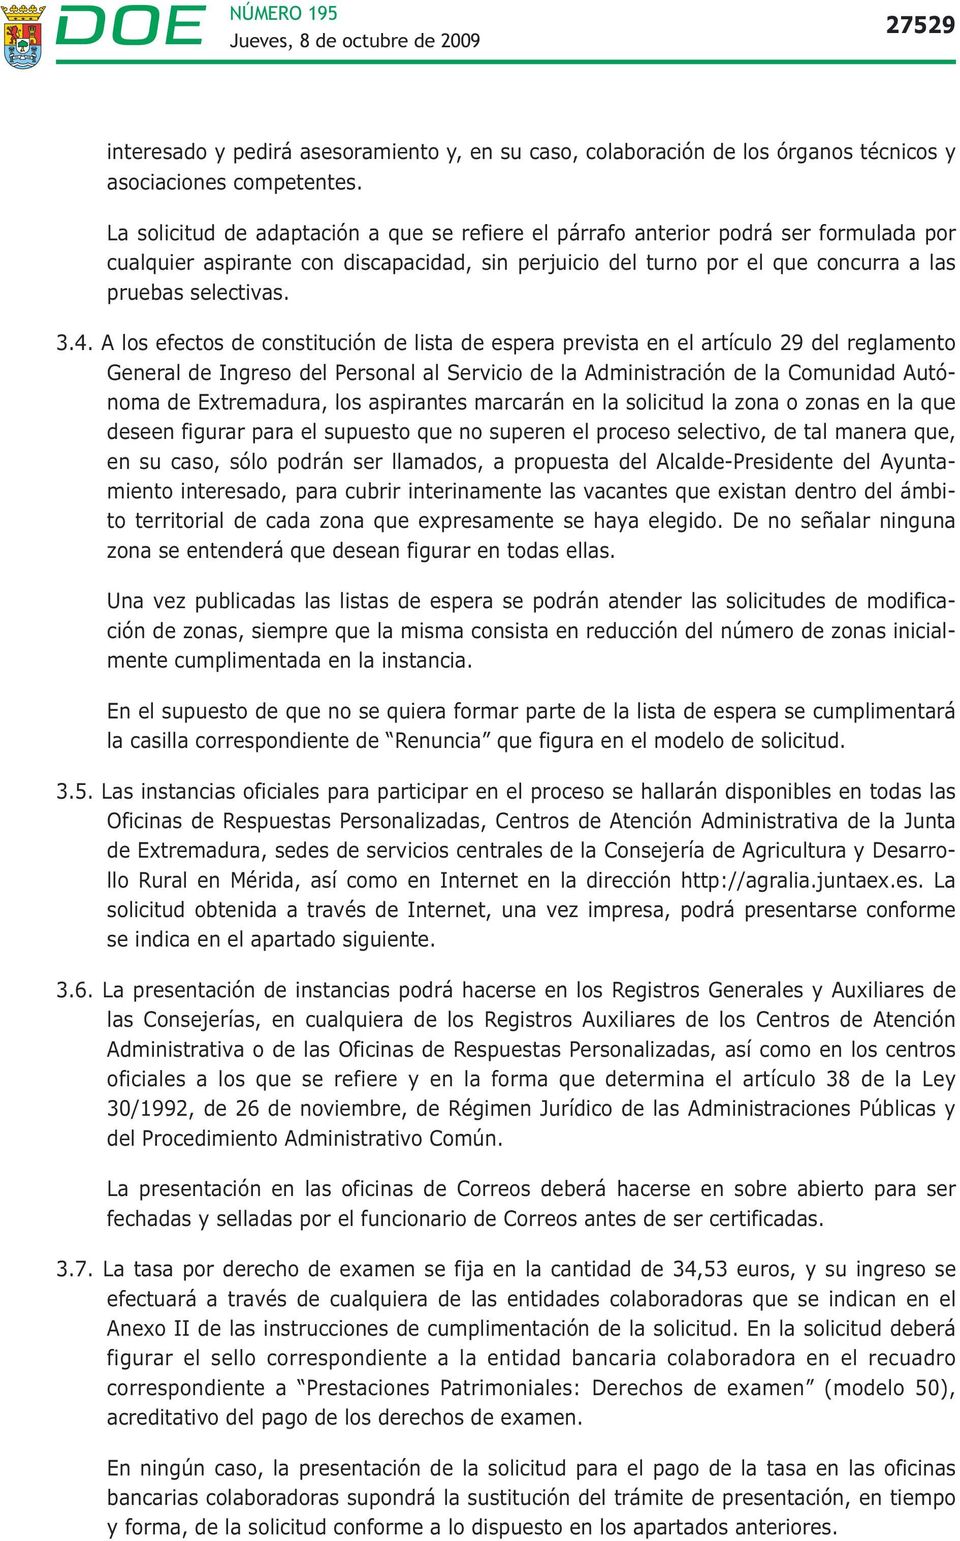 A los efectos de constitución de lista de espera prevista en el artículo 29 del reglamento General de Ingreso del Personal al Servicio de la Administración de la Comunidad Autónoma de Extremadura,